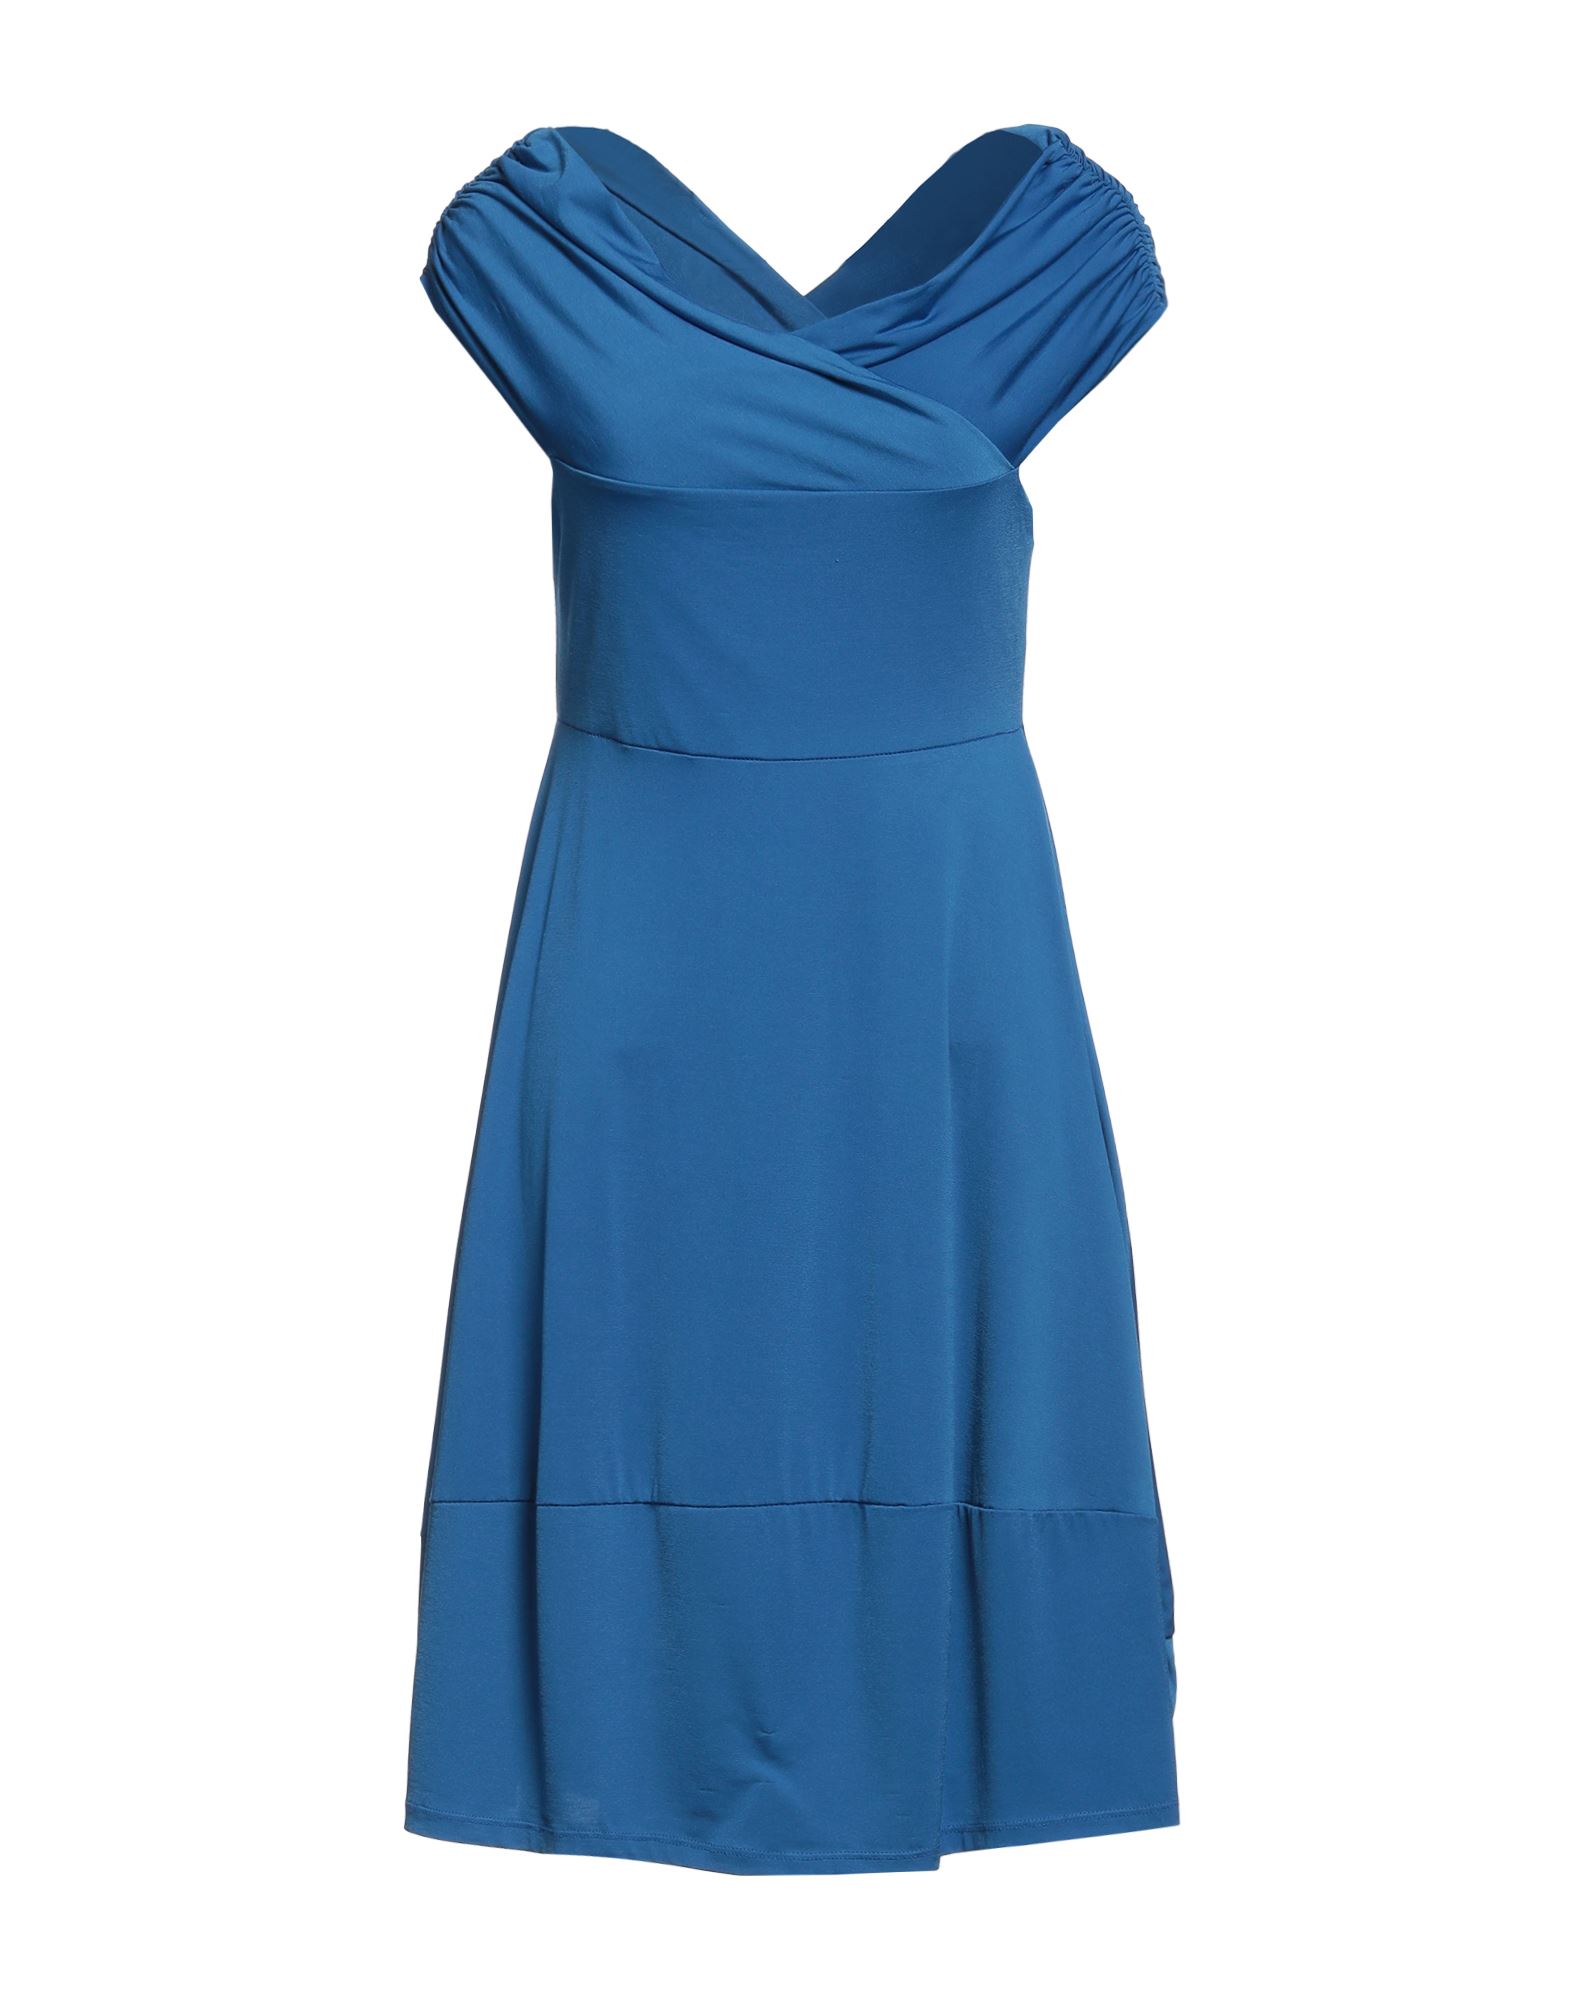 Sandro Ferrone Short Dresses In Blue